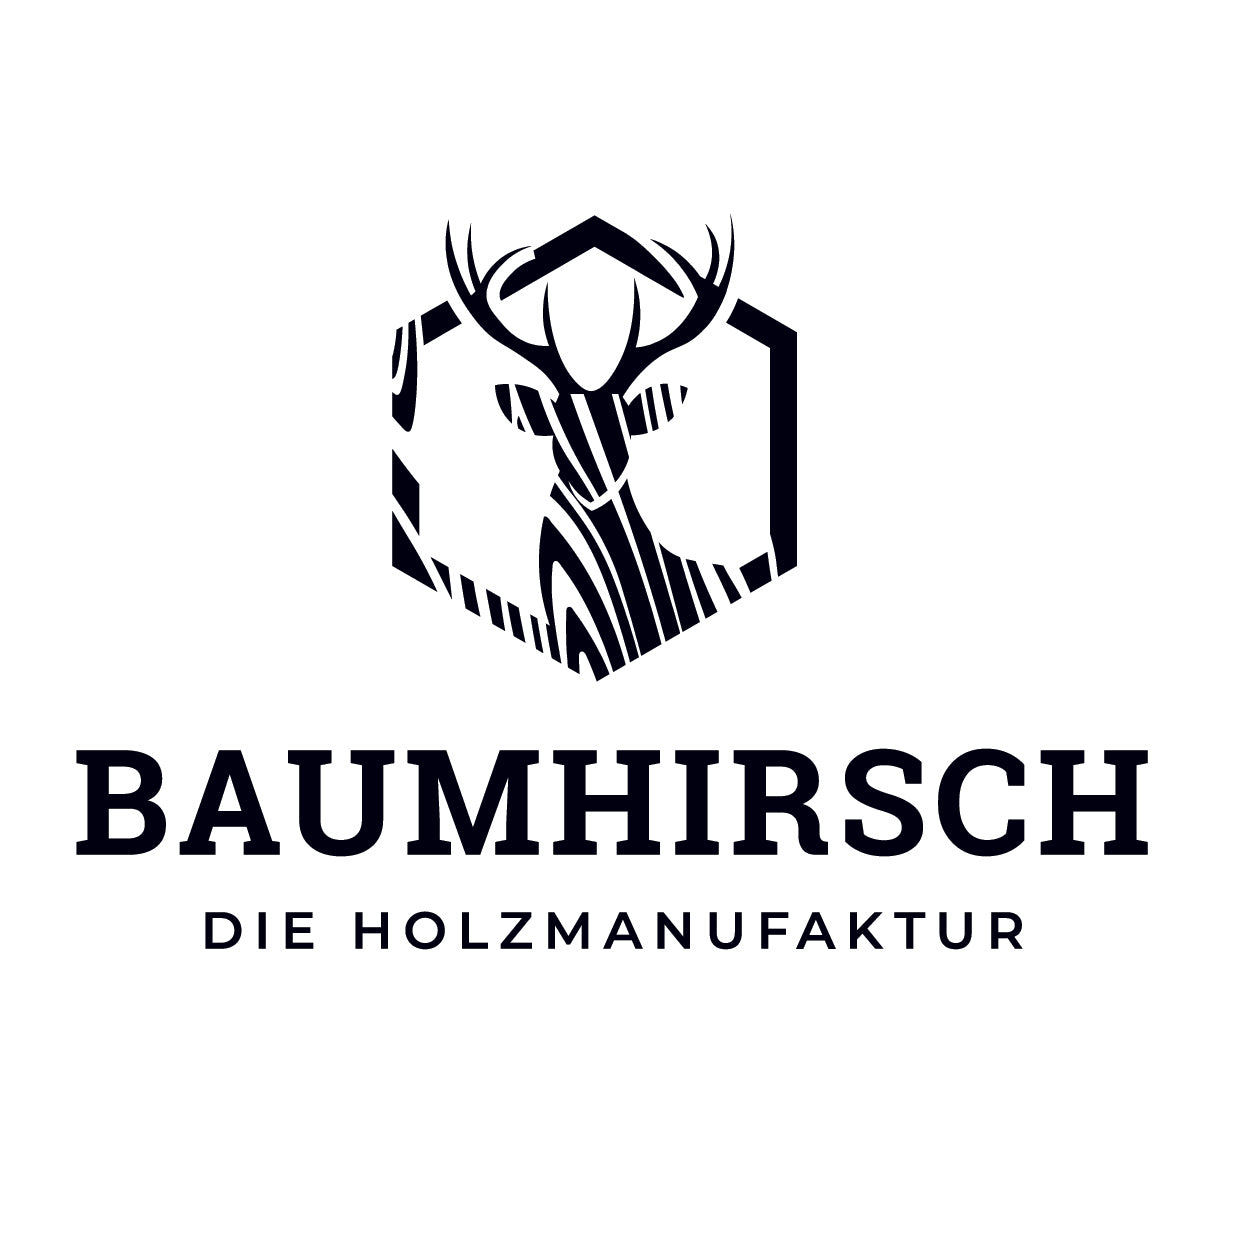 BAUMHIRSCH - Die Holzmanufaktur